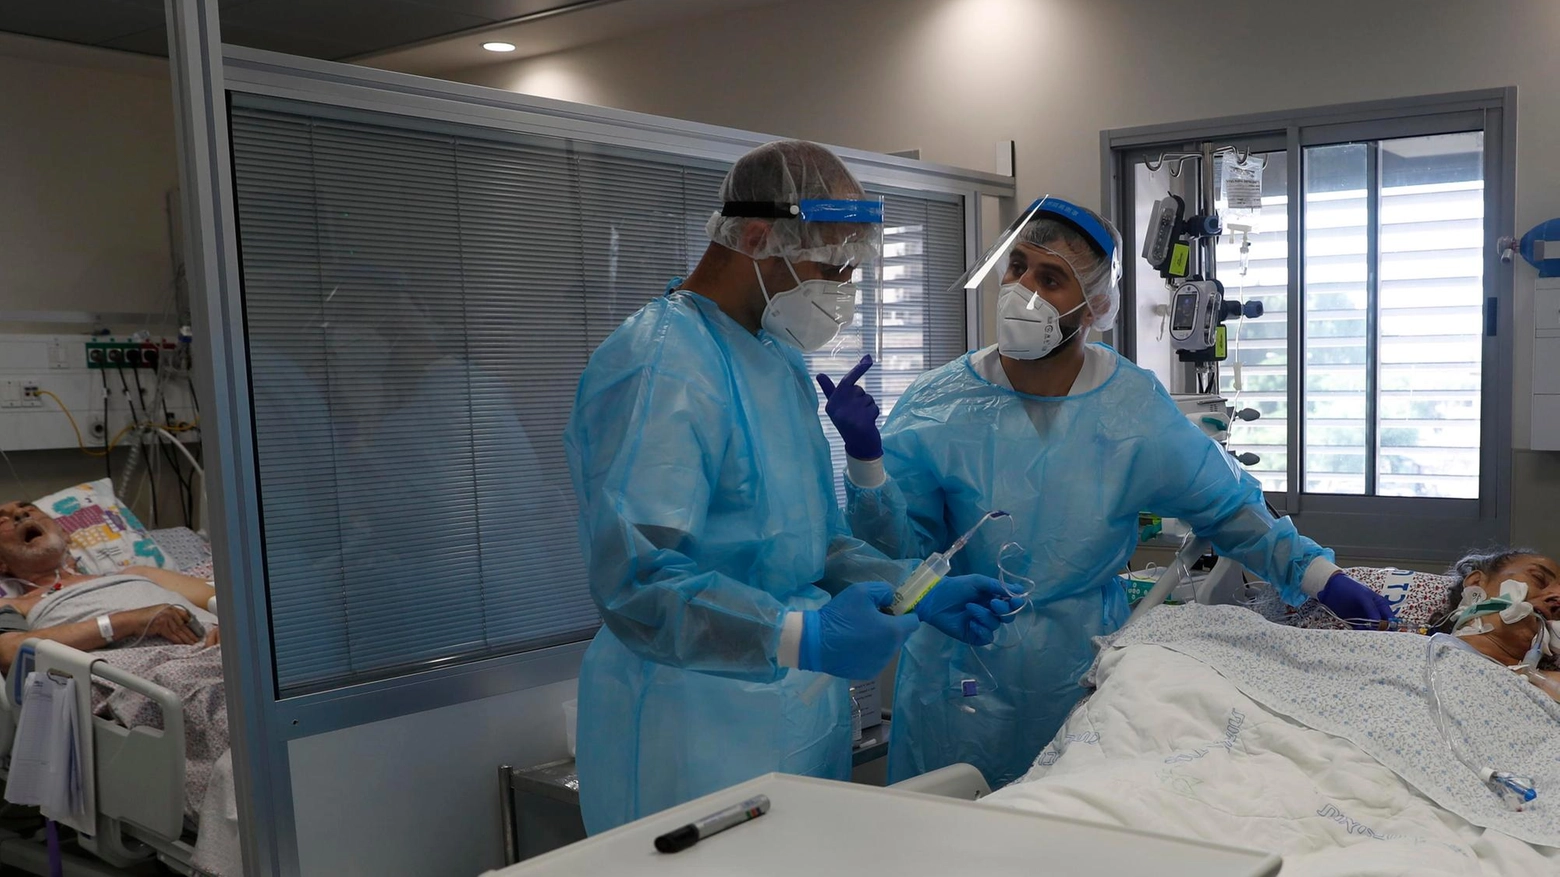 Israele, due dottori nel reparto Covid (Ansa)